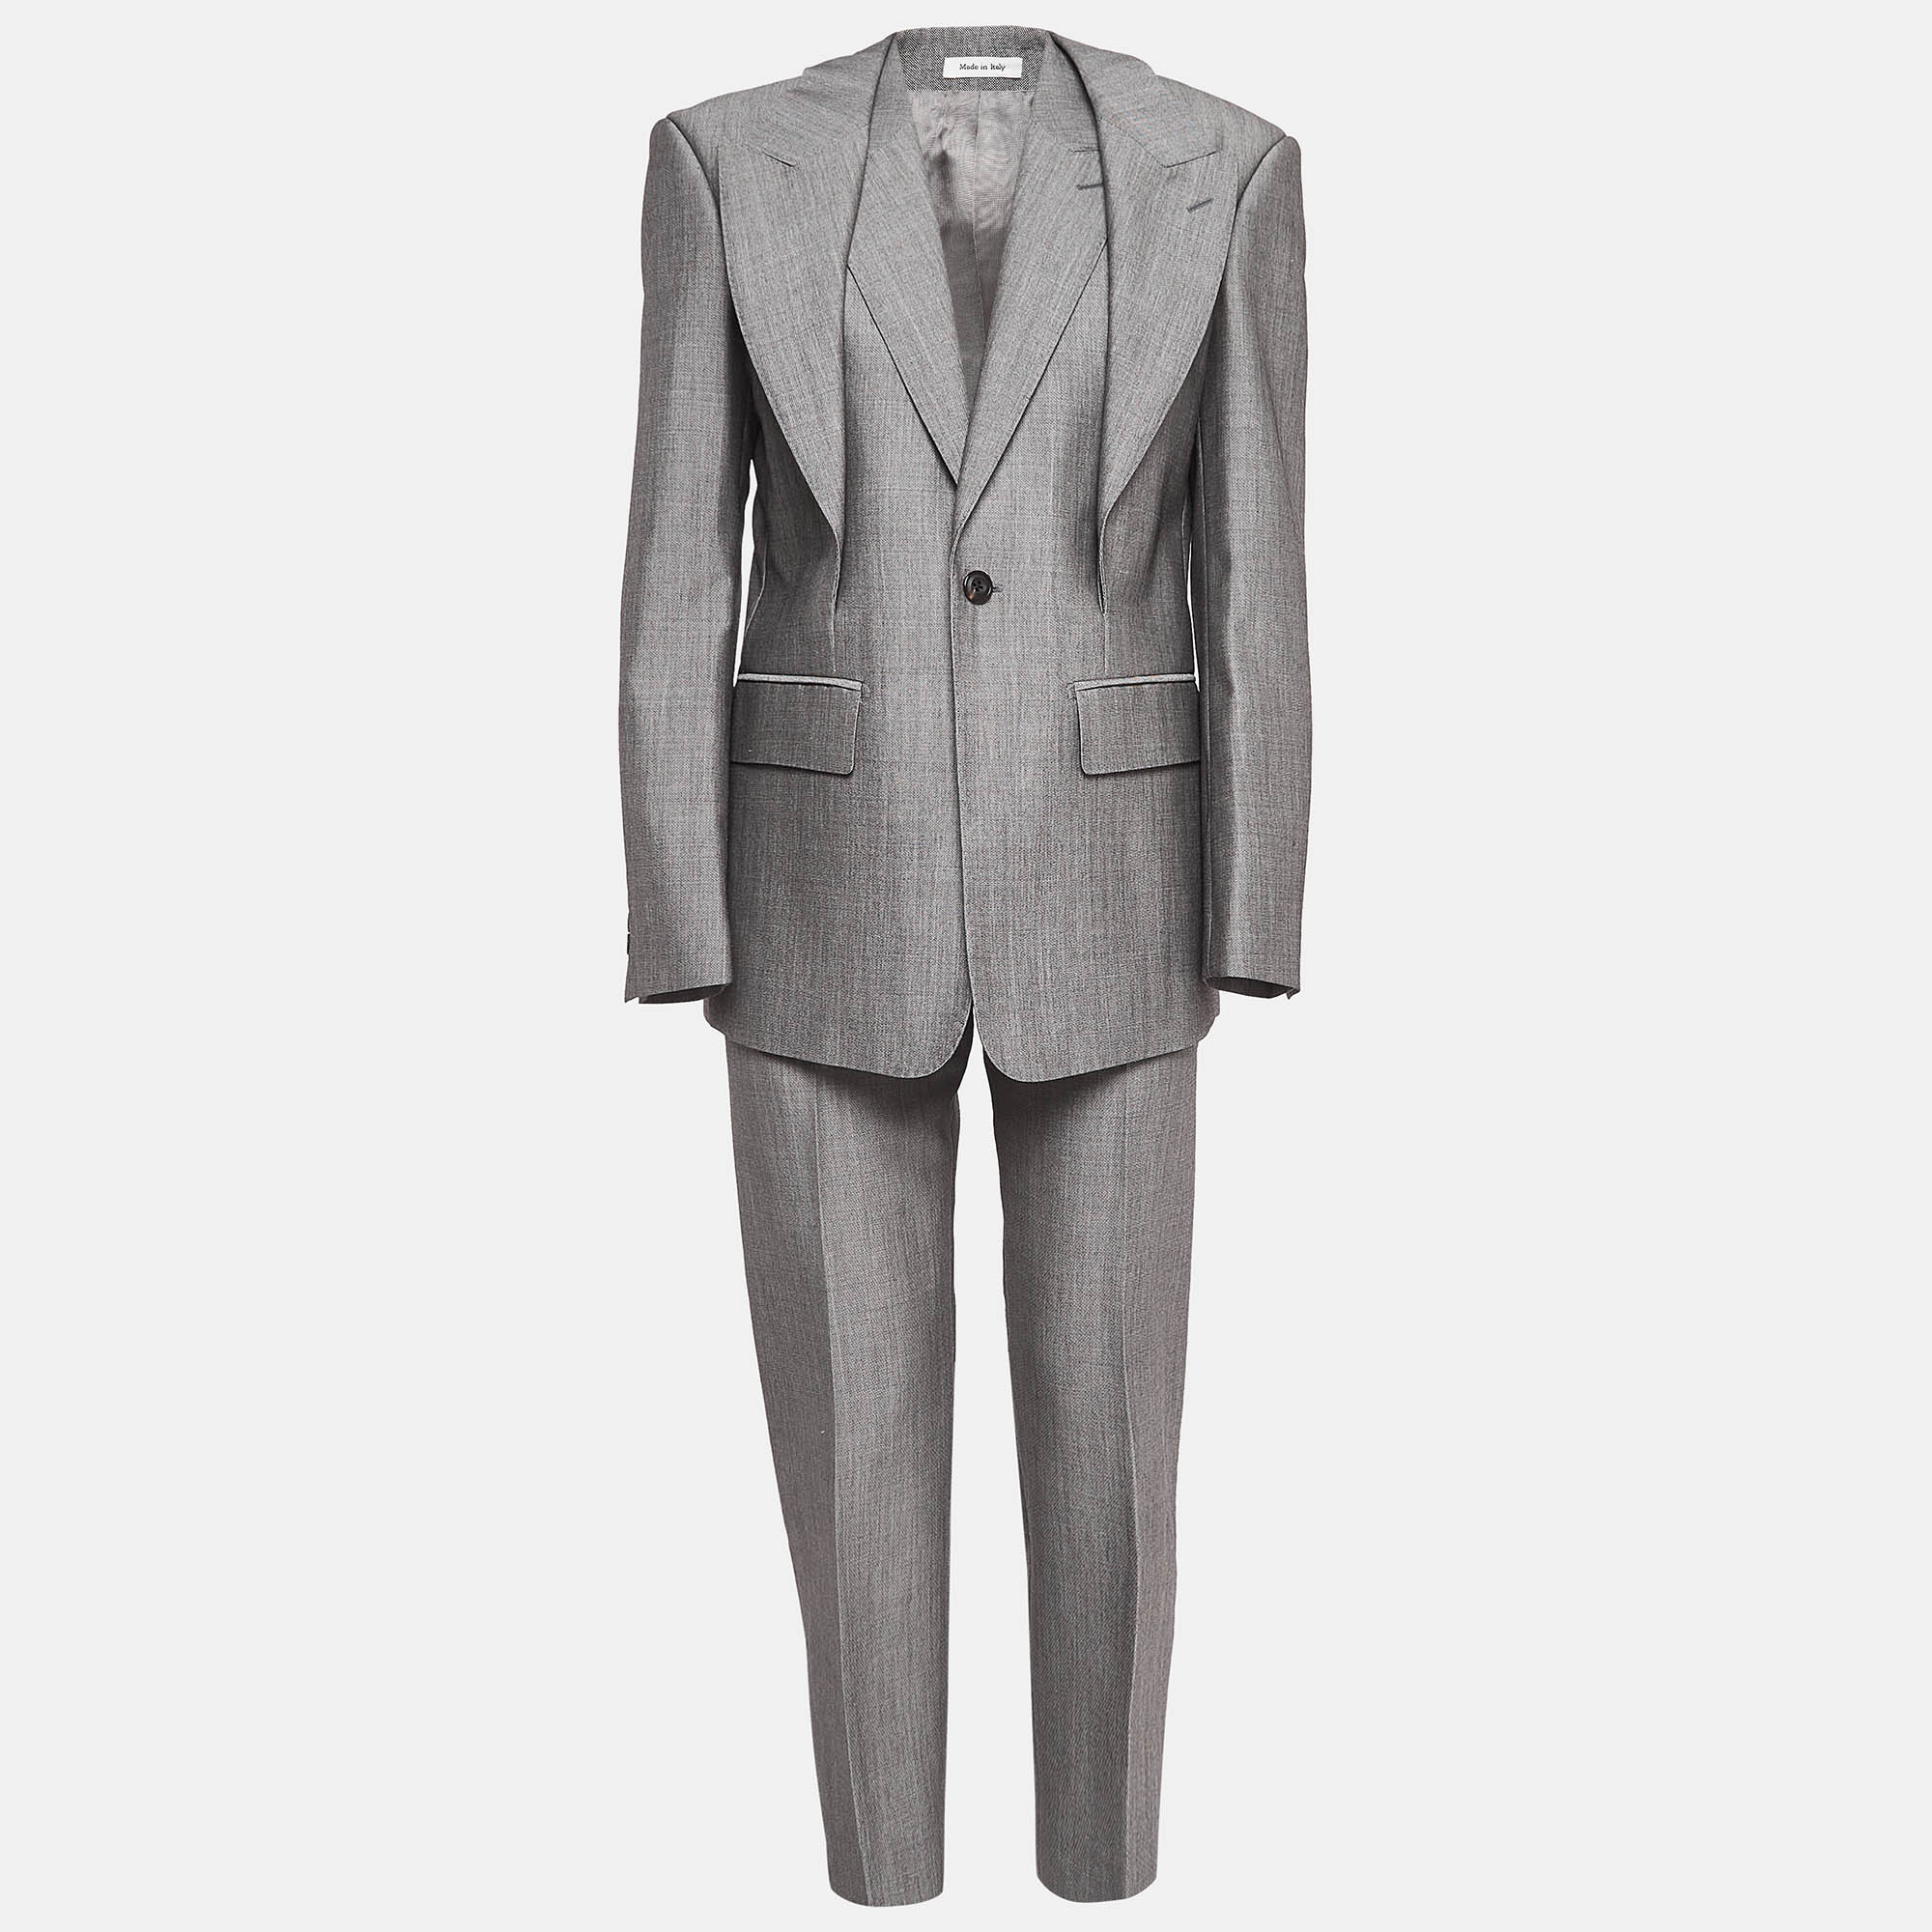 Alexander mcqueen grey wool blazer and pants suit s